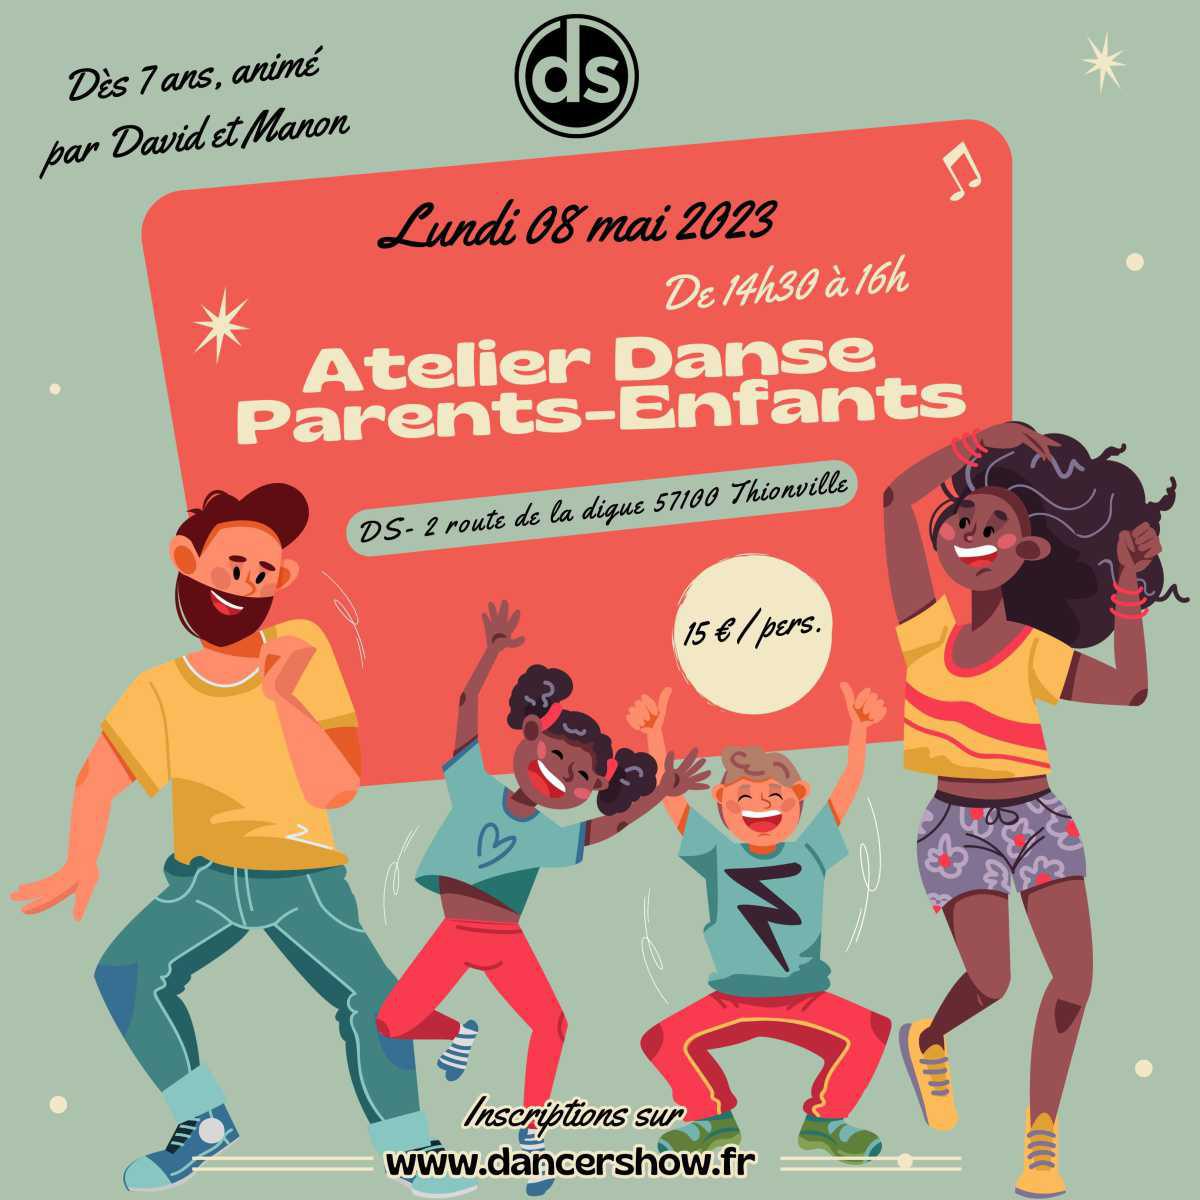 ATELIER DANSE MODERNE "PARENTS-ENFANTS" avec DAVID & MANON !